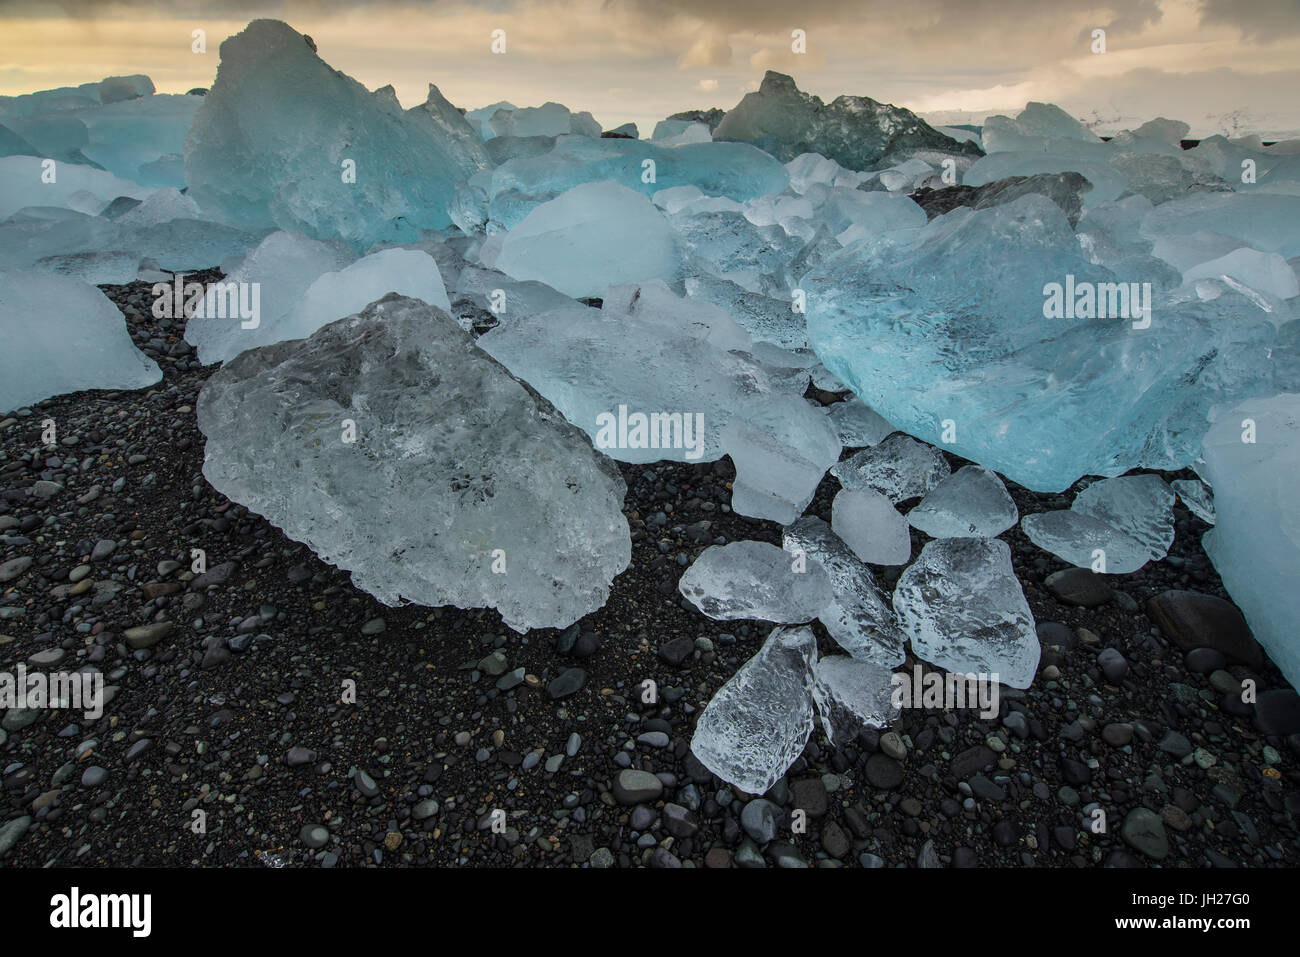 Les icebergs Jokulsarlon sur plage de sable noir, l'Islande, les régions polaires Banque D'Images